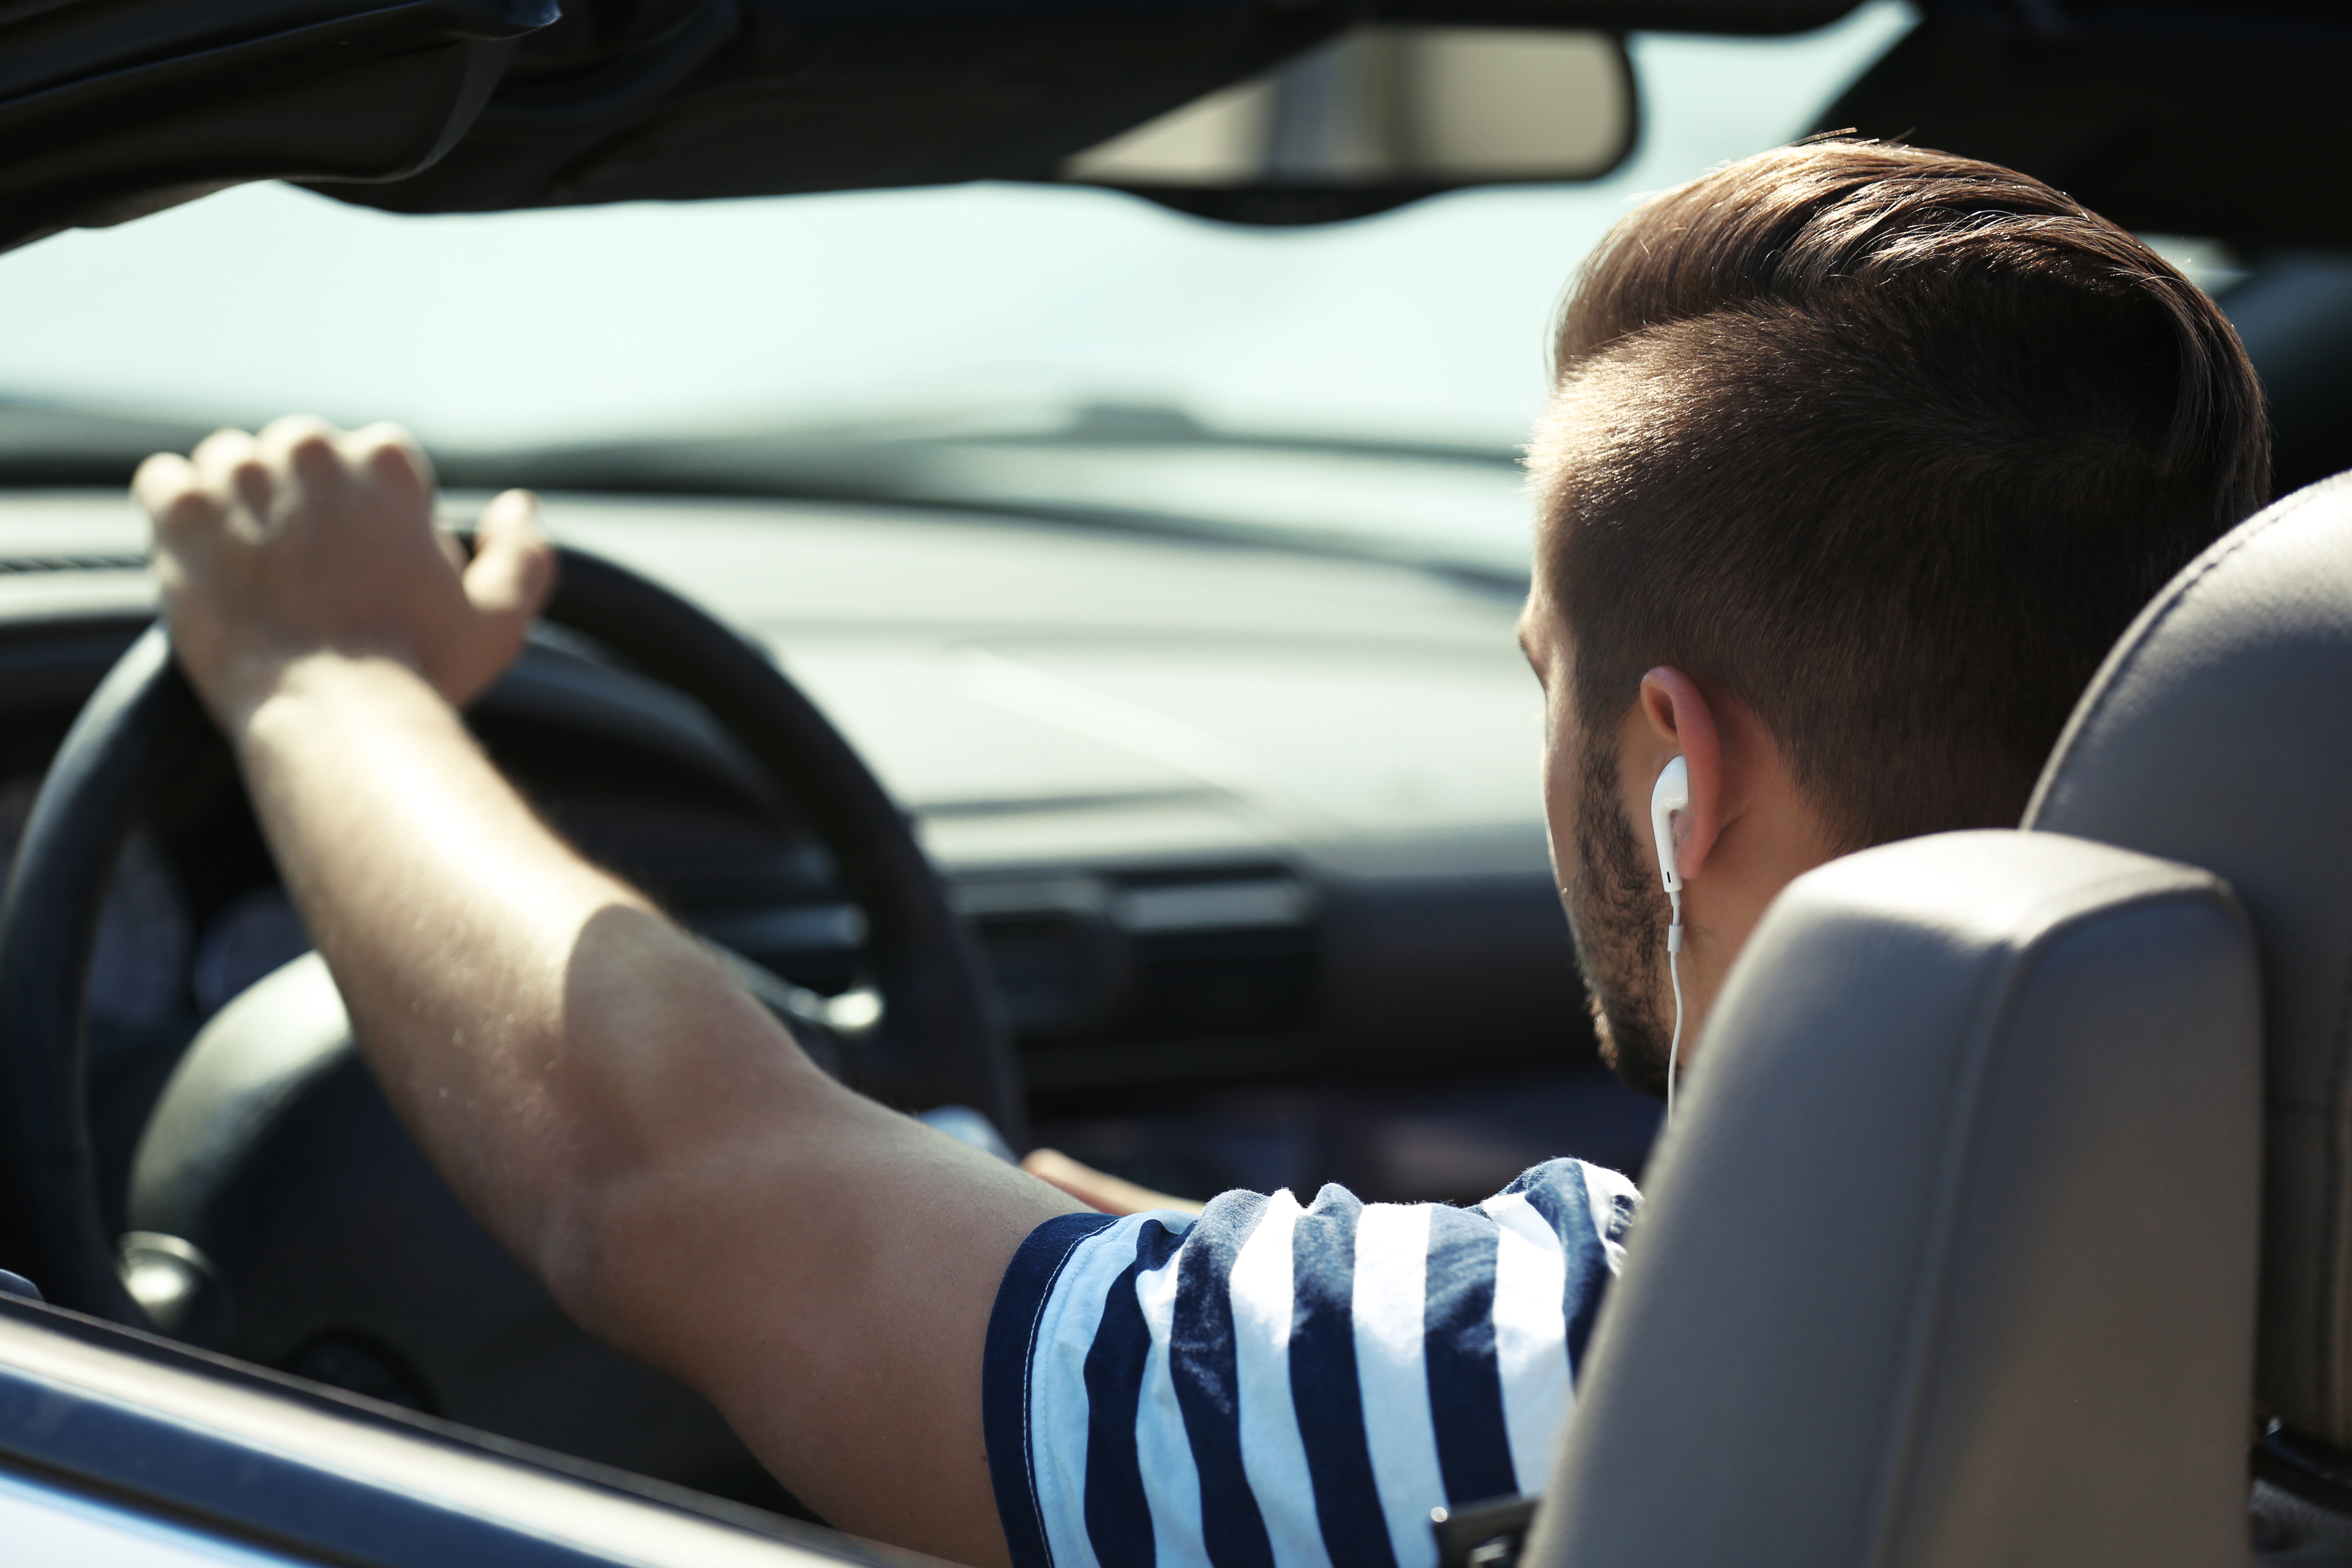 A man driving a car | Source: Shutterstock